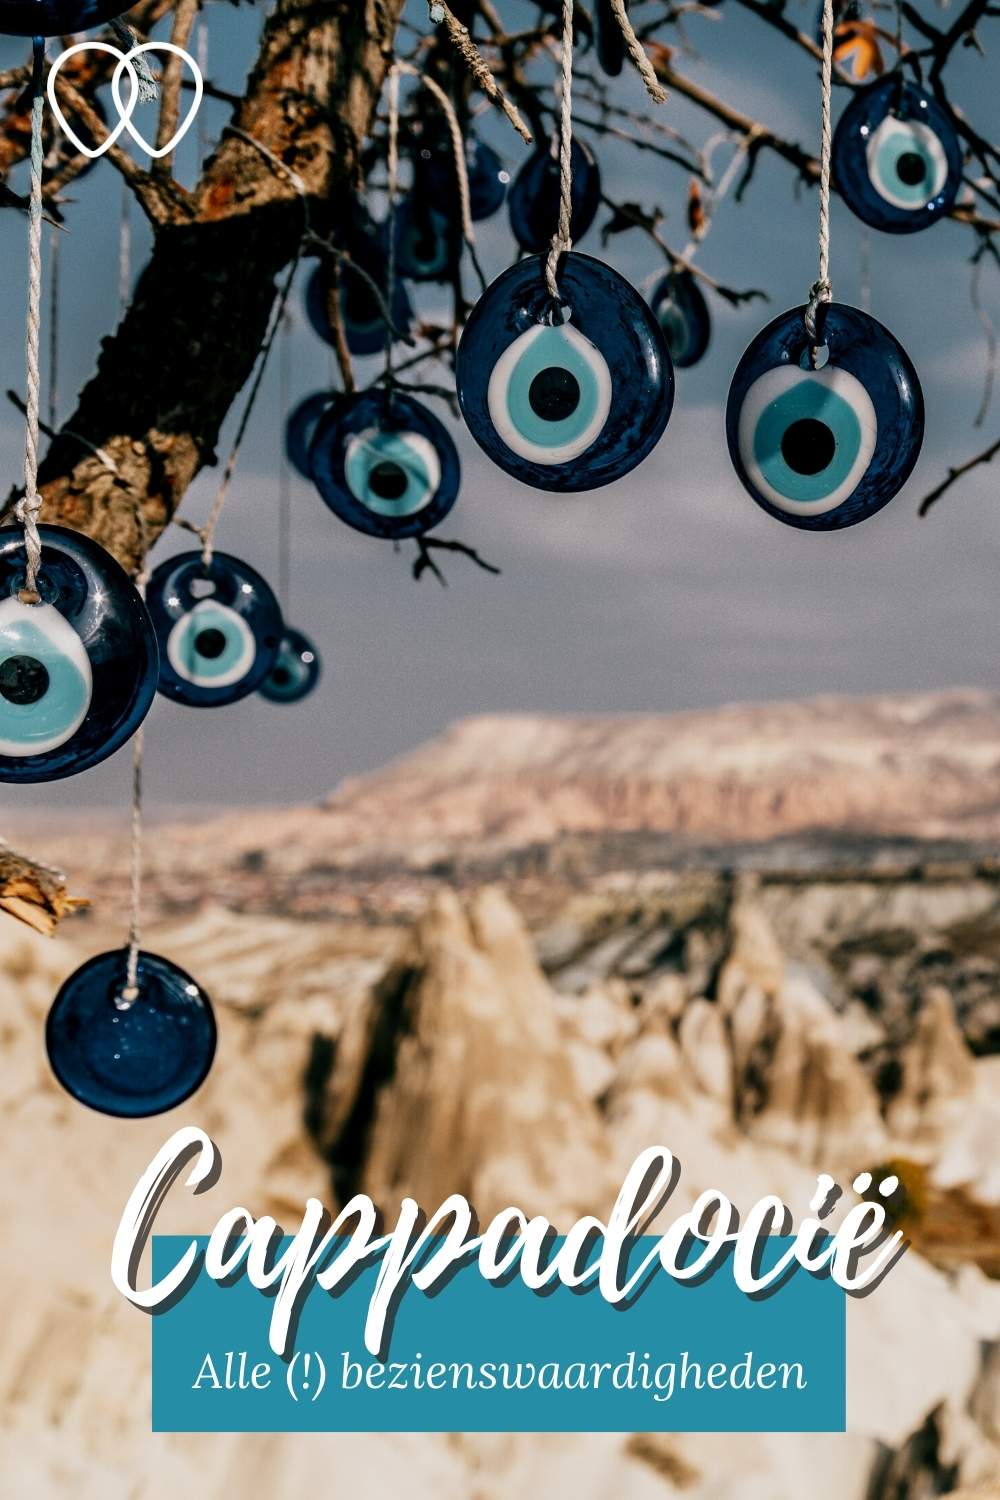 Cappadocië, Turkije: zin in een rondreis Cappadocië? Ontdek de mooiste Cappadocië bezienswaardigheden | Mooistestedentrips.nl